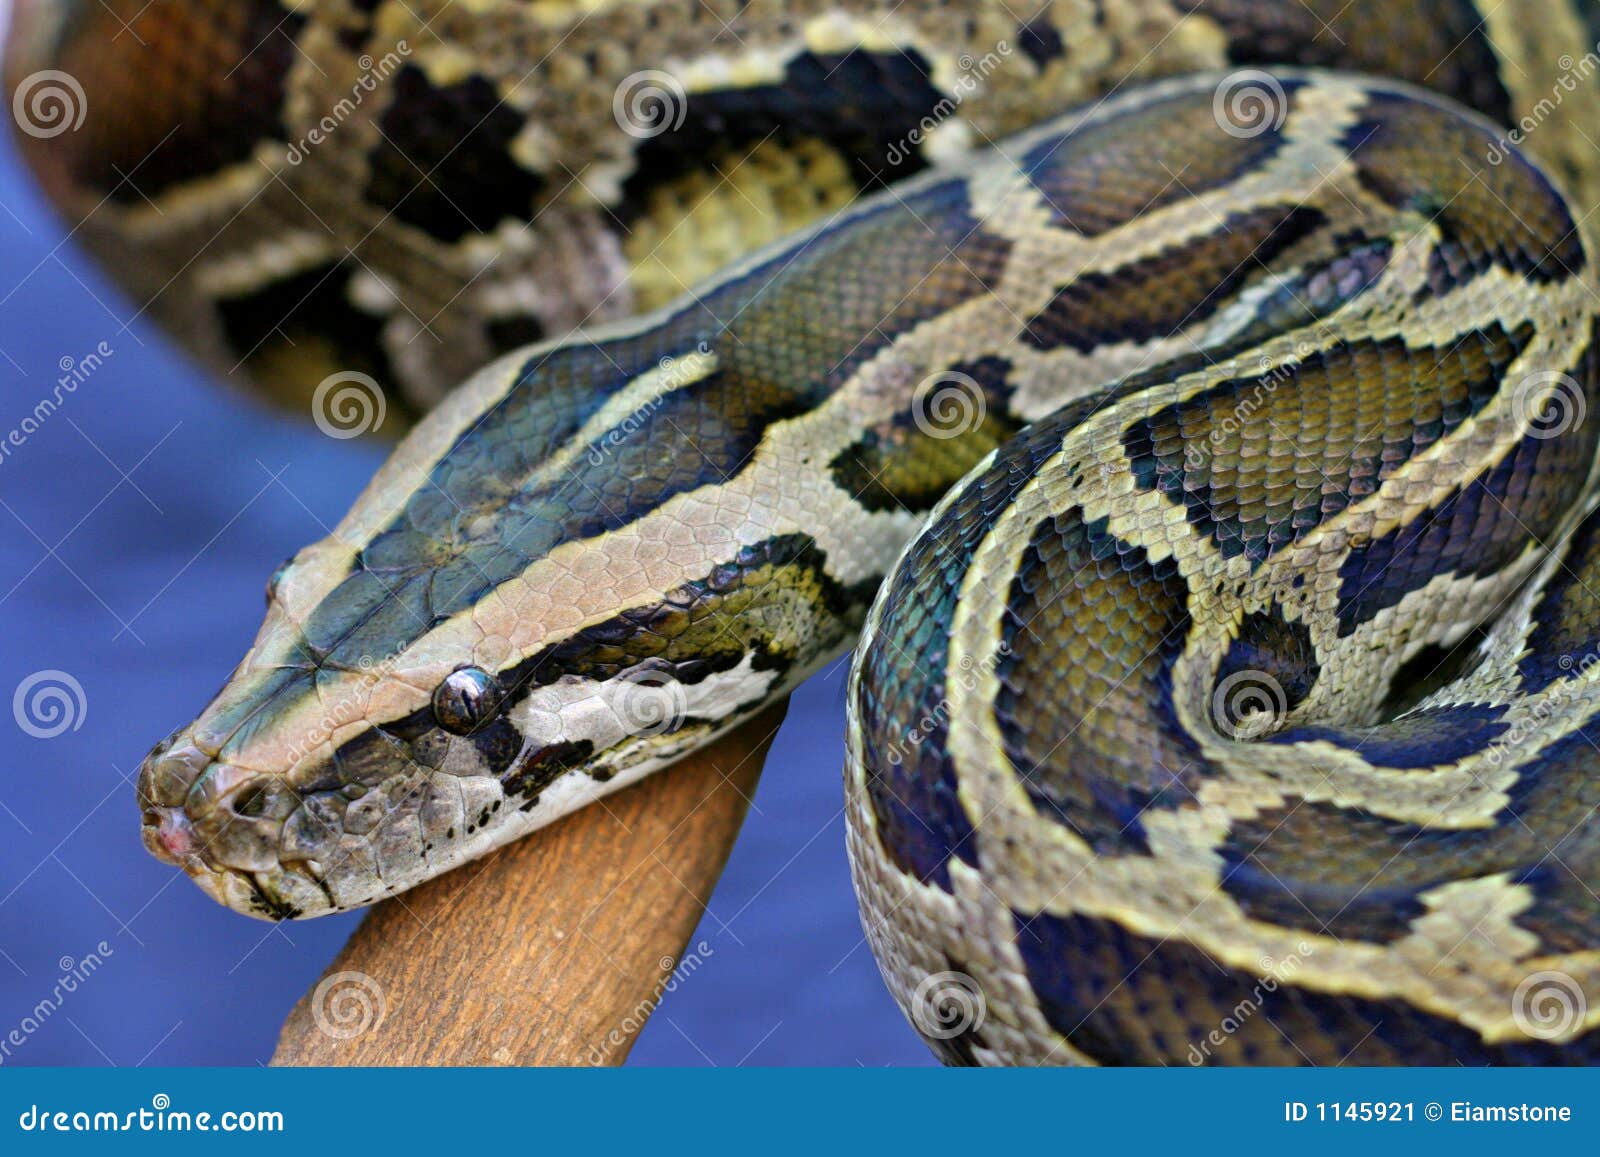 Aanbeveling knal Speciaal De Slang van de python stock afbeelding. Image of wild - 1145921